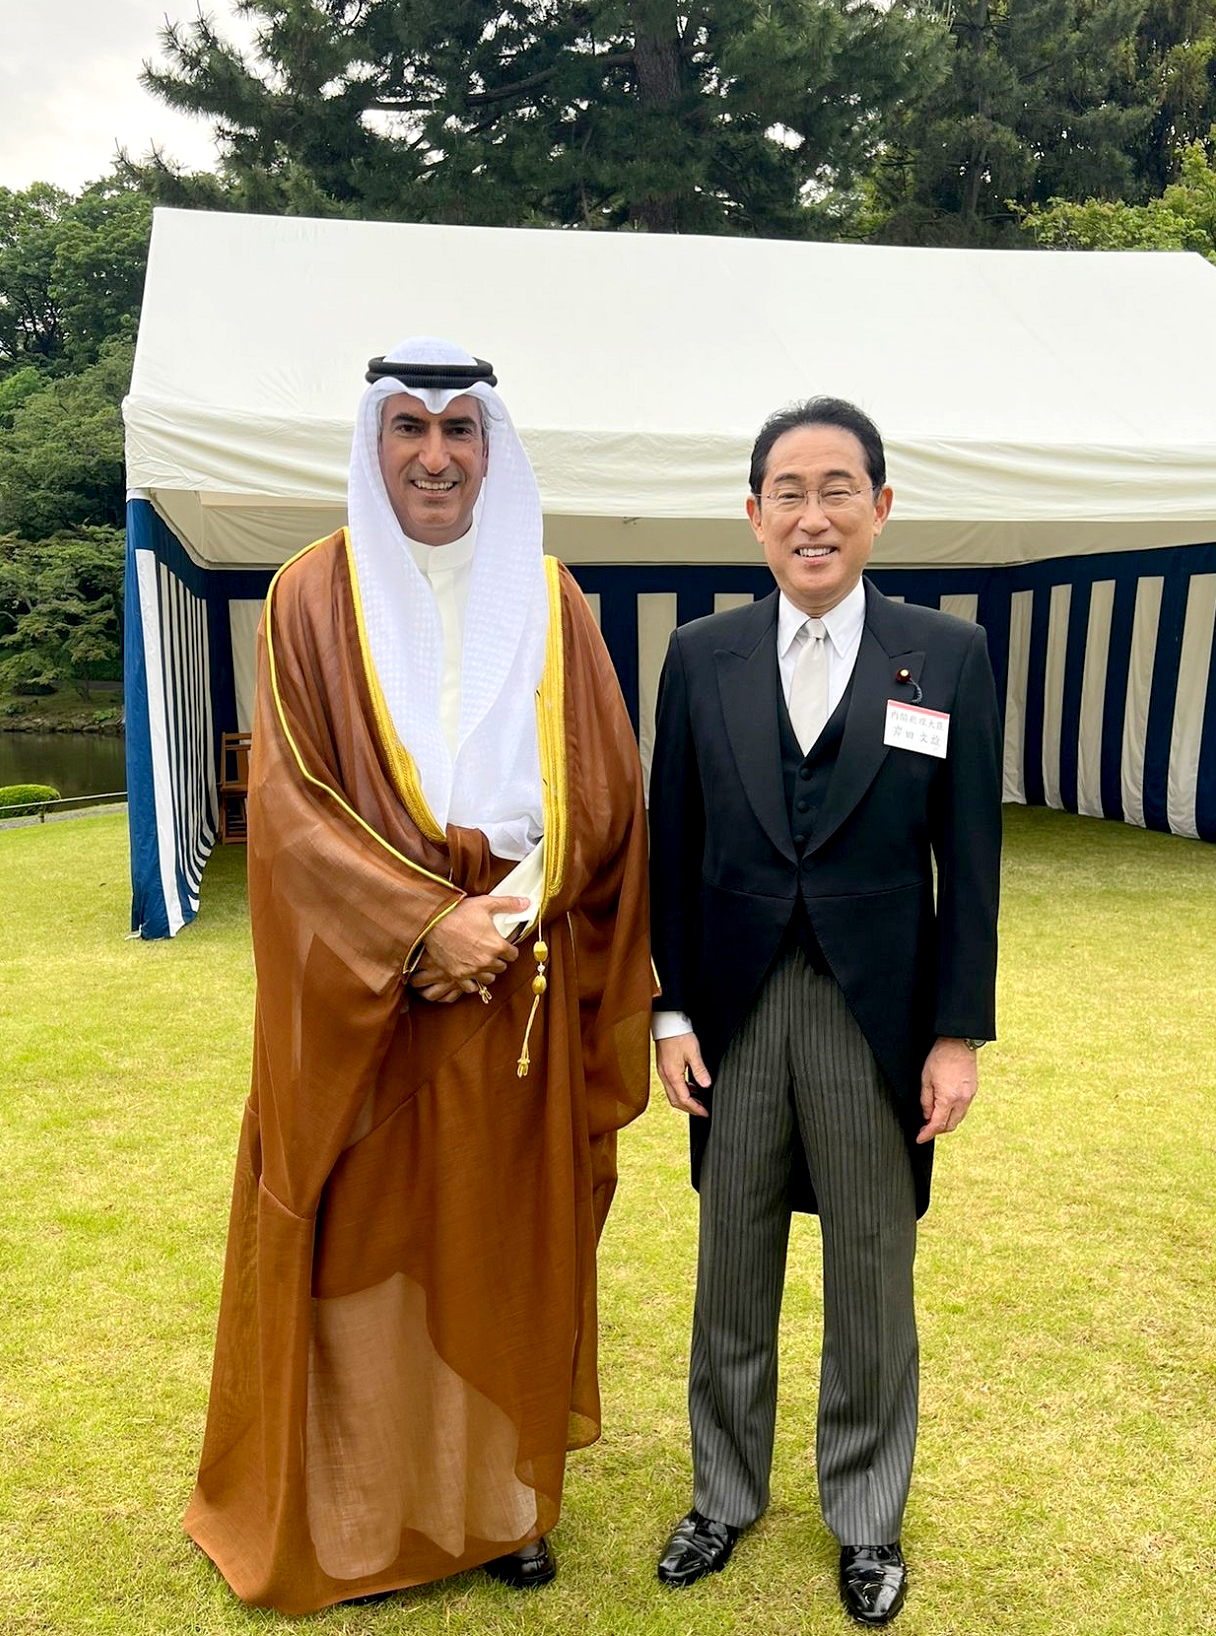 سفير دولة الكويت لدى اليابان سامي الزمانان ورئيس وزراء اليابان فوميو كيشيدا